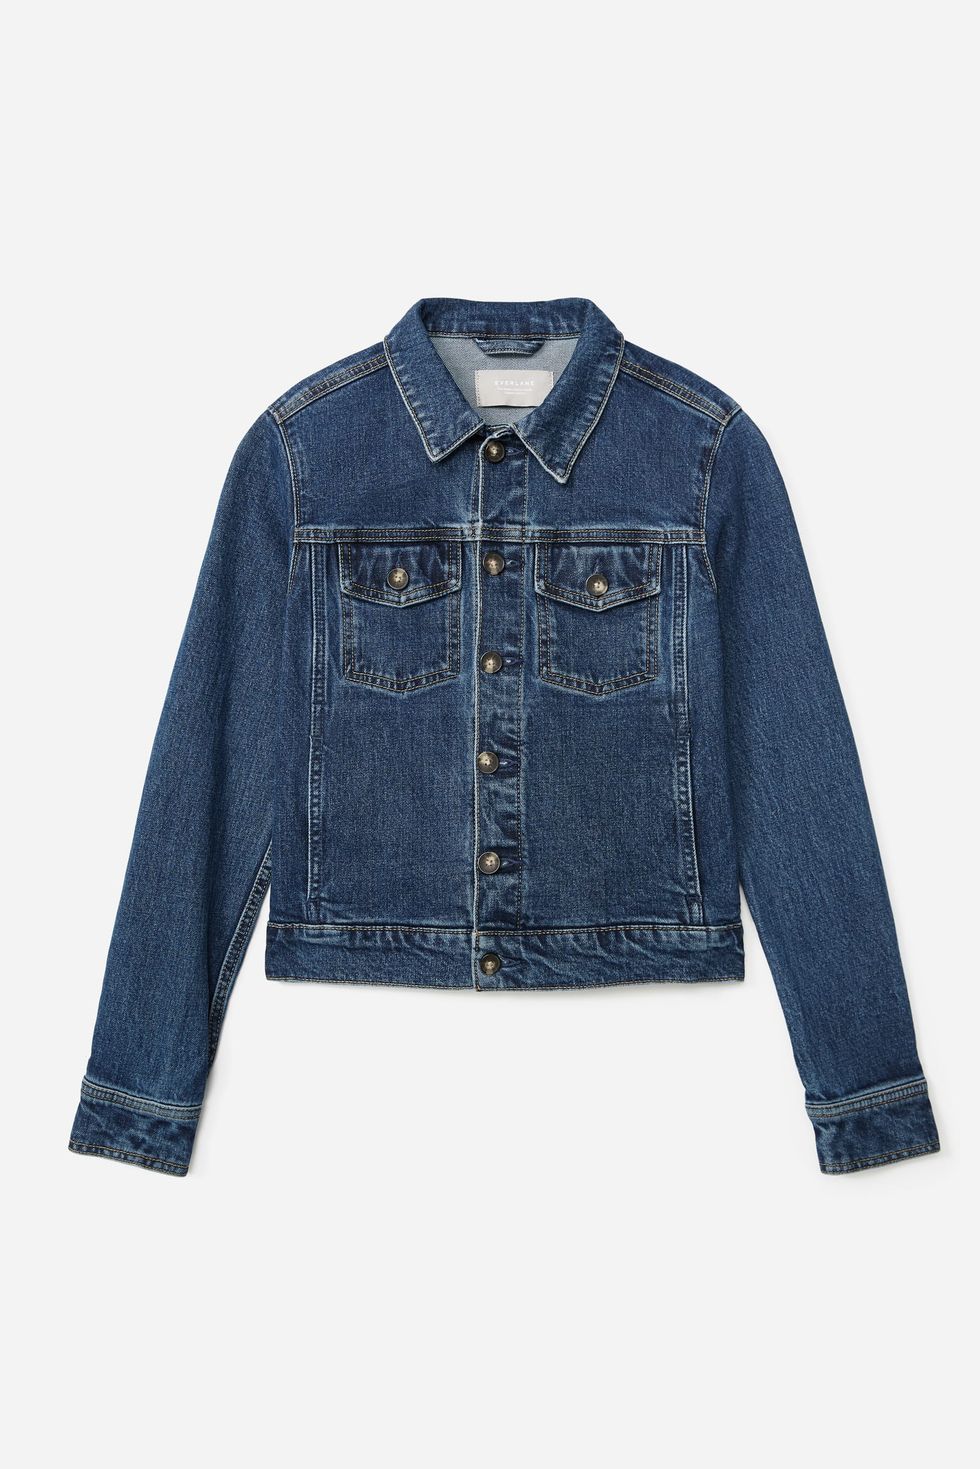 The Modern Jean Jacket